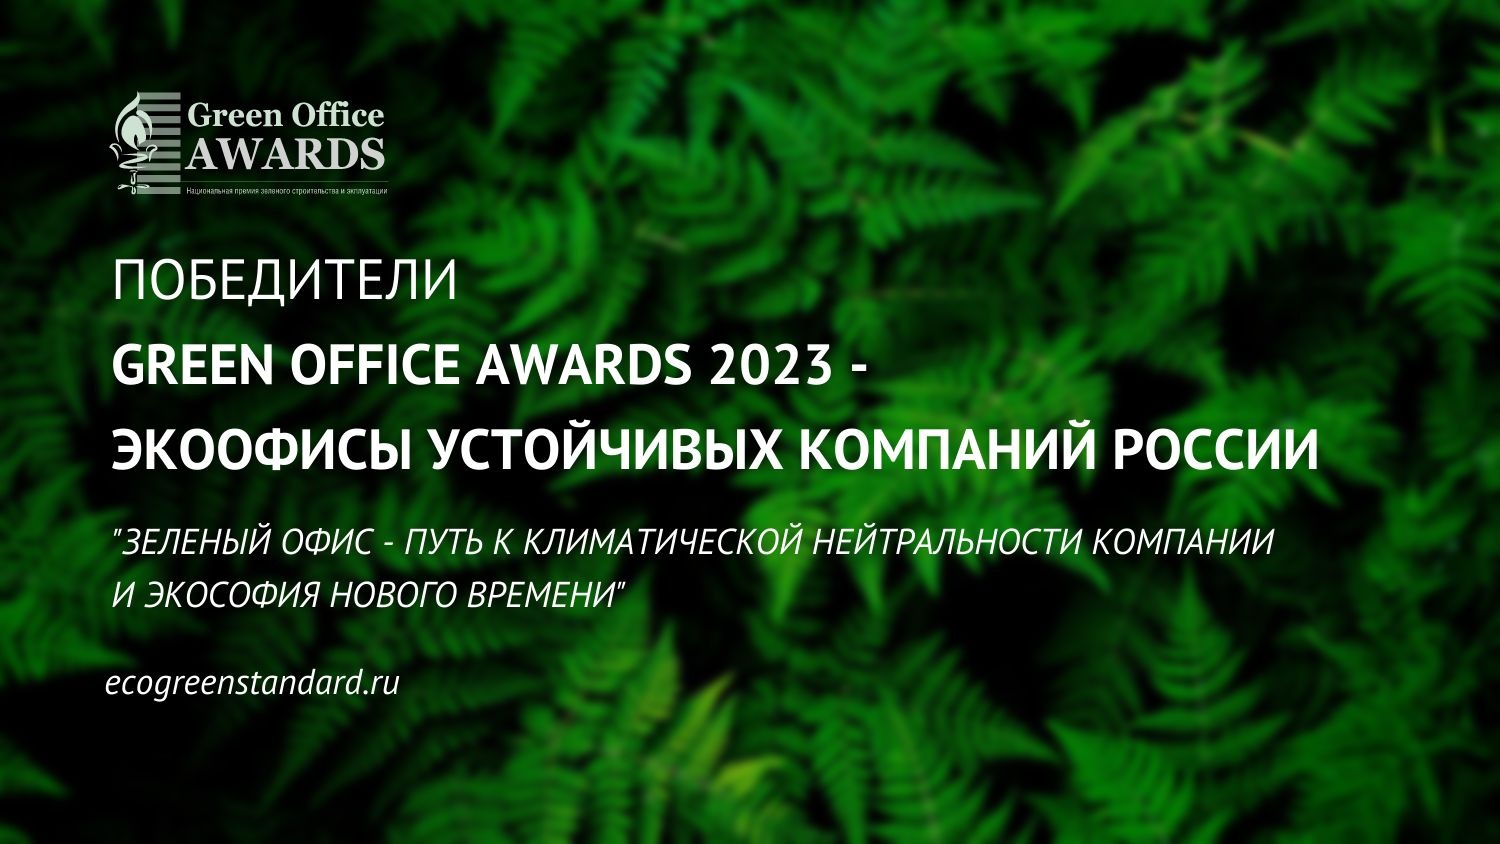 Объявлены победители премии Green Office Awards 2023 «Экоофисы устойчивых компаний России»